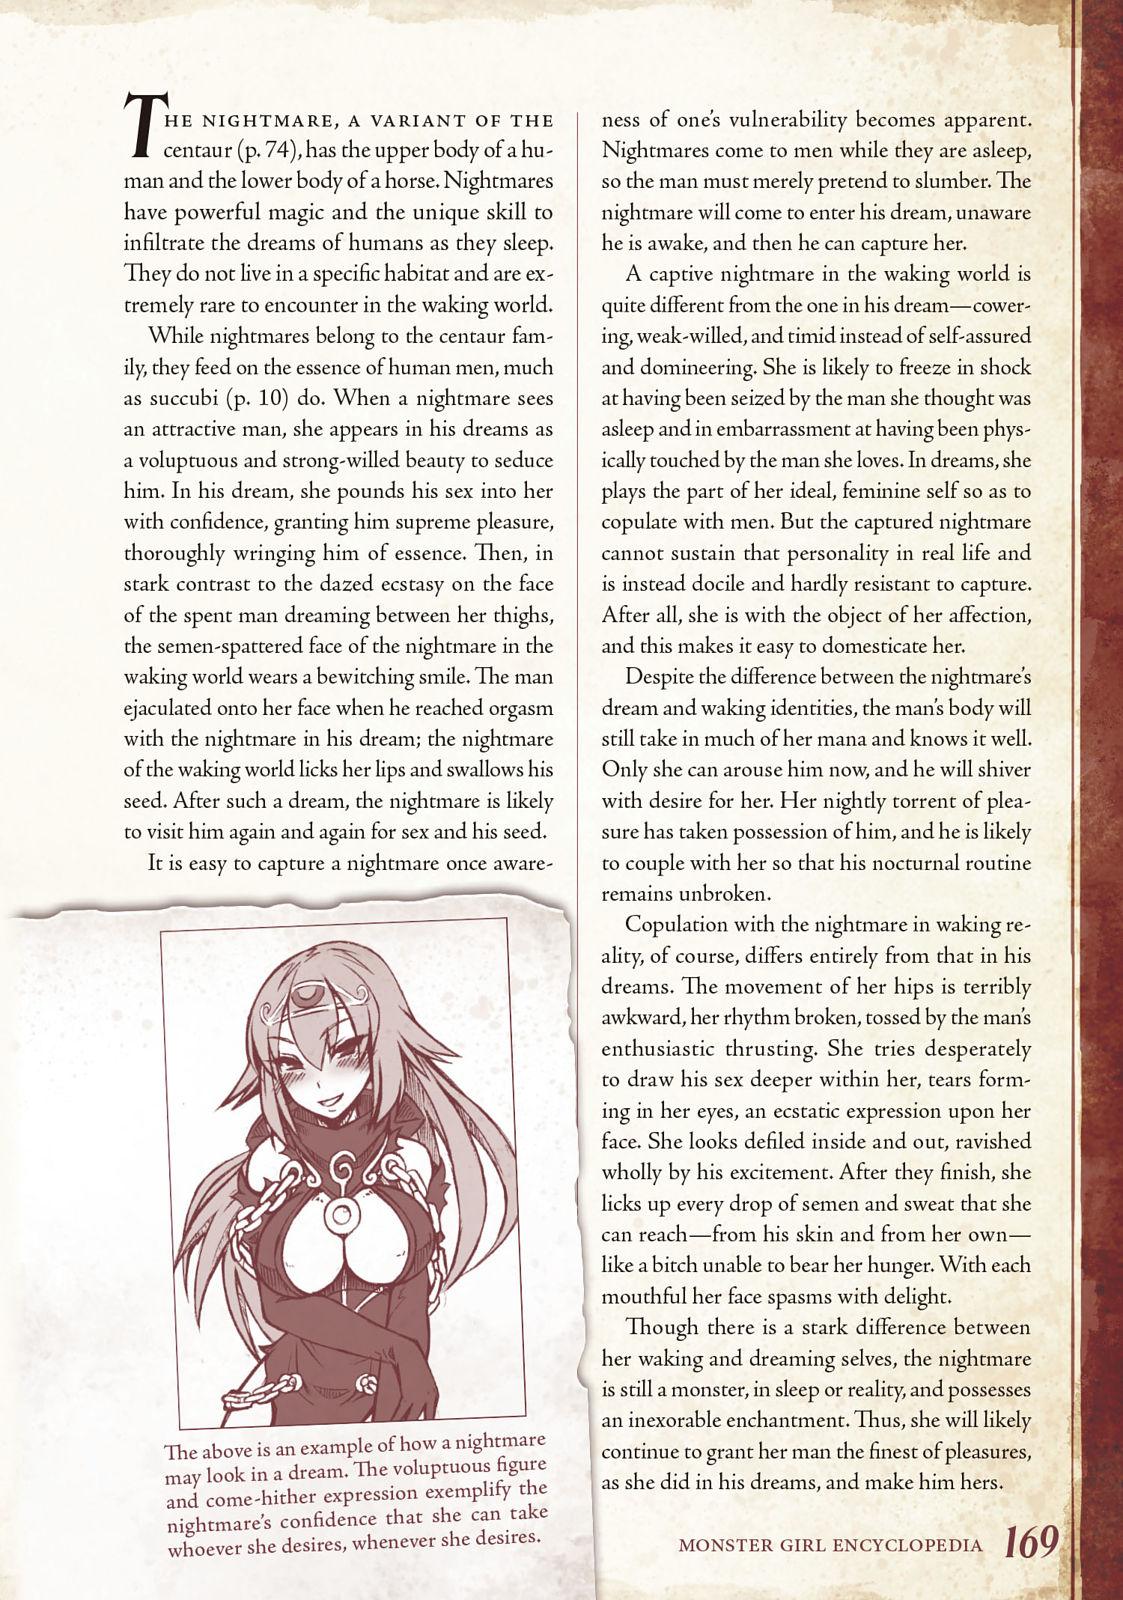 Monster Girl Encyclopedia Vol. 1 169